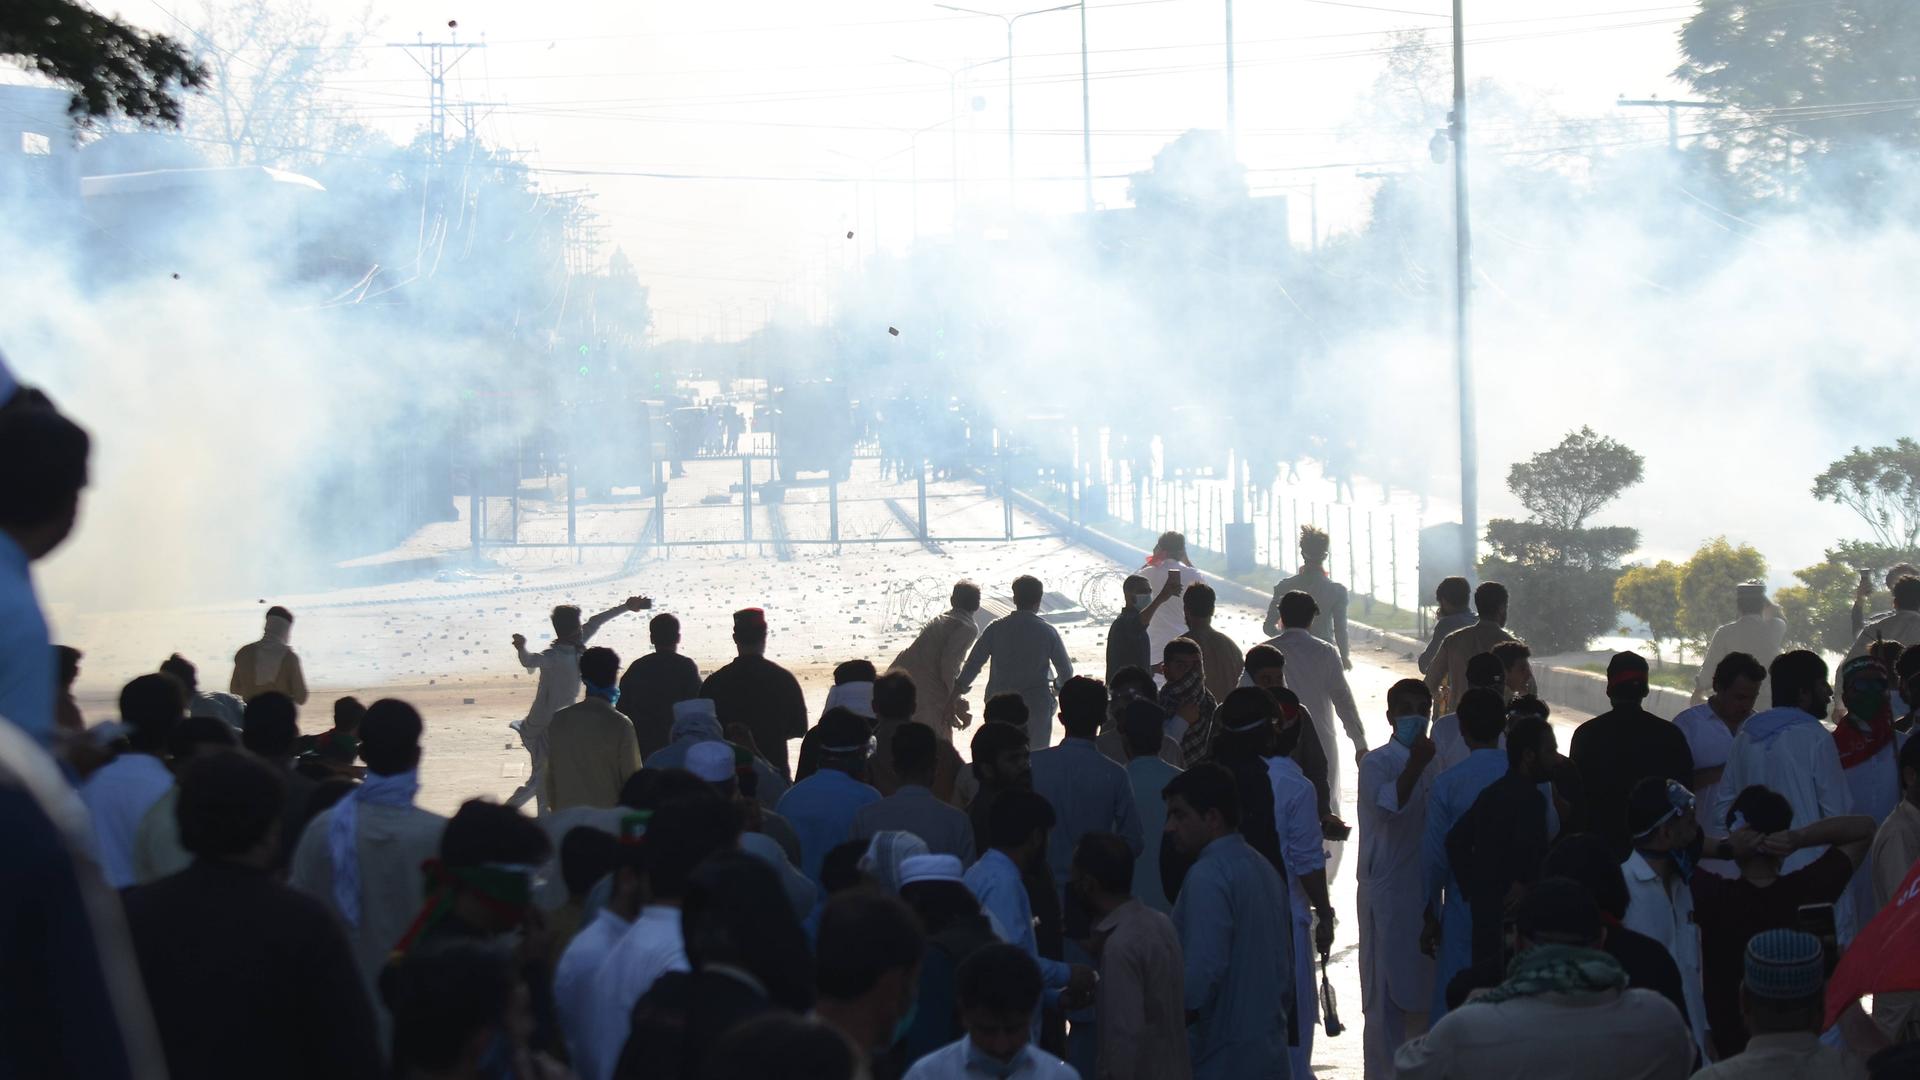 Auf einer Straße in der pakistanischen Stadt Peschawar demonstrieren viele Männer. Im Hintergrund sind Polizeifahrzeuge erkennbar, Tränengas wurde eingesetzt.